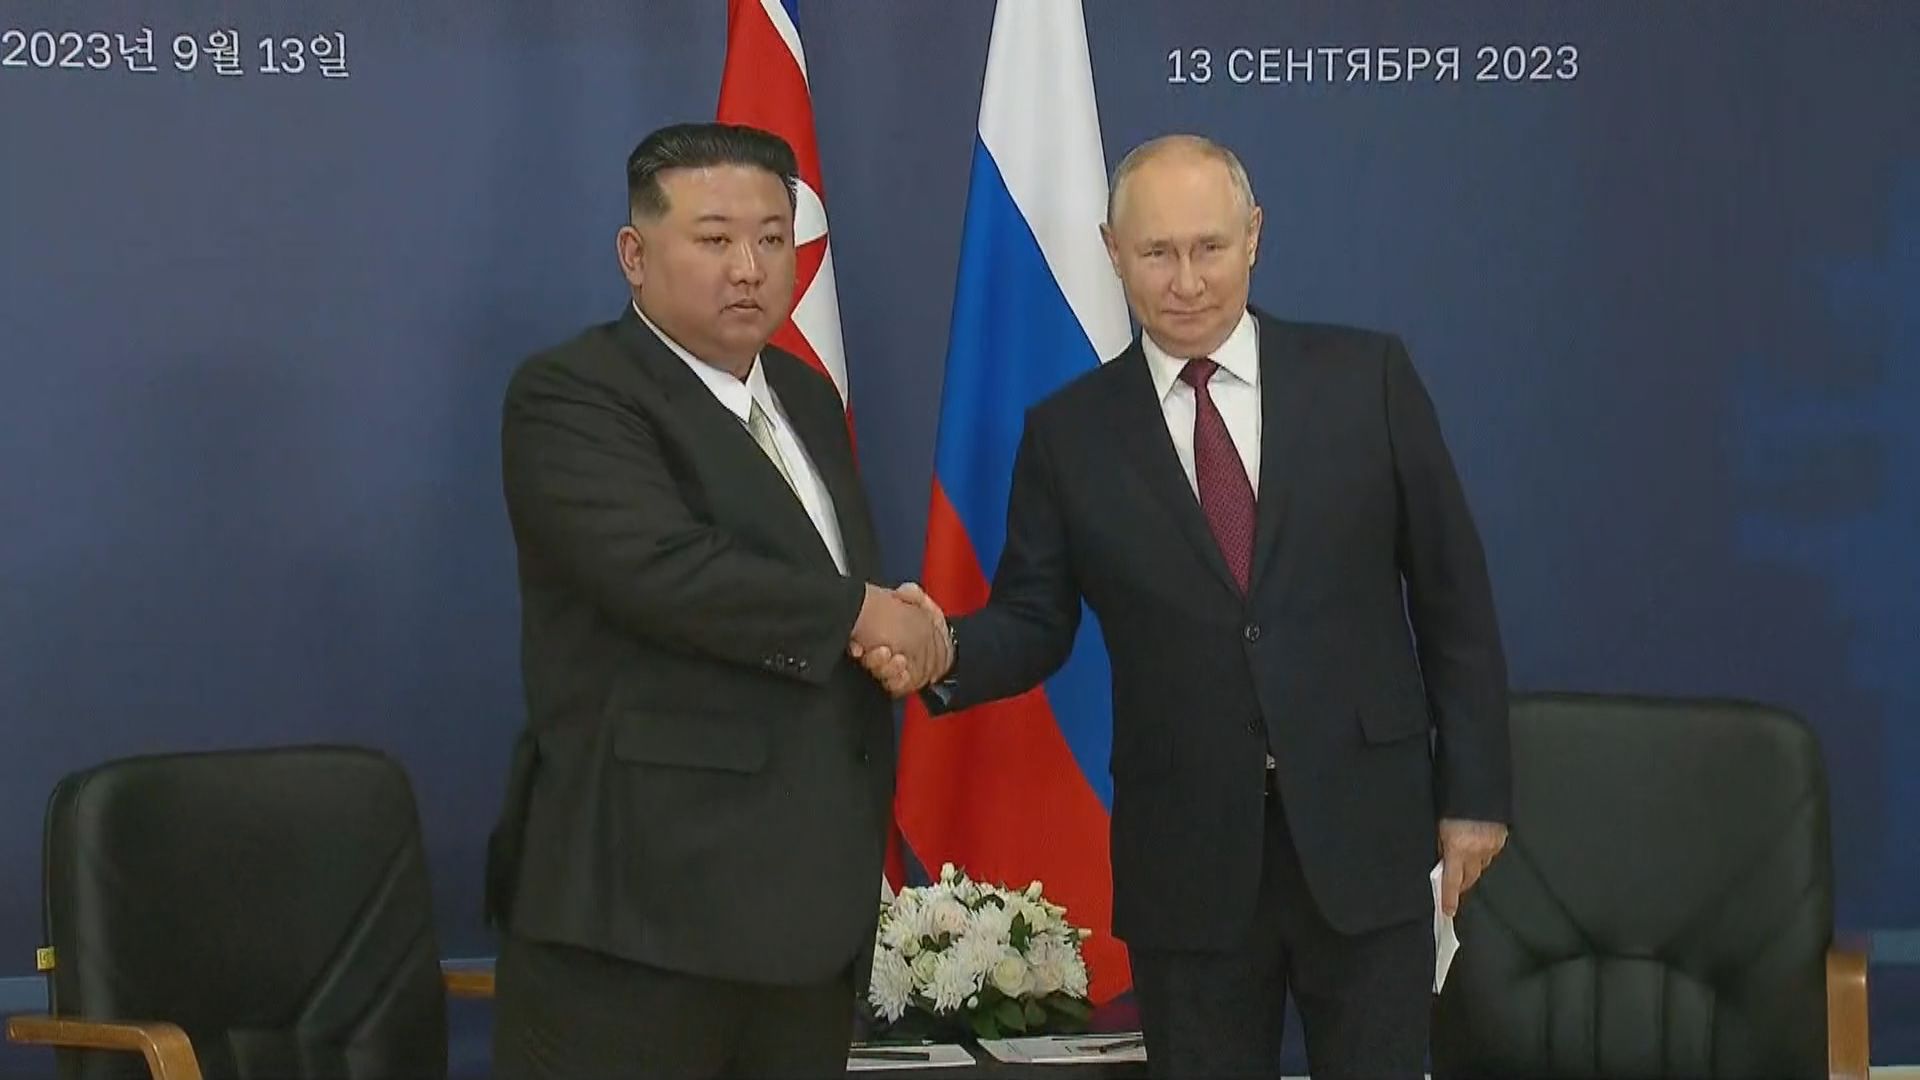 普京與金正恩在俄羅斯東方航天發射場會晤 金正恩稱會與俄並肩對抗帝國主義